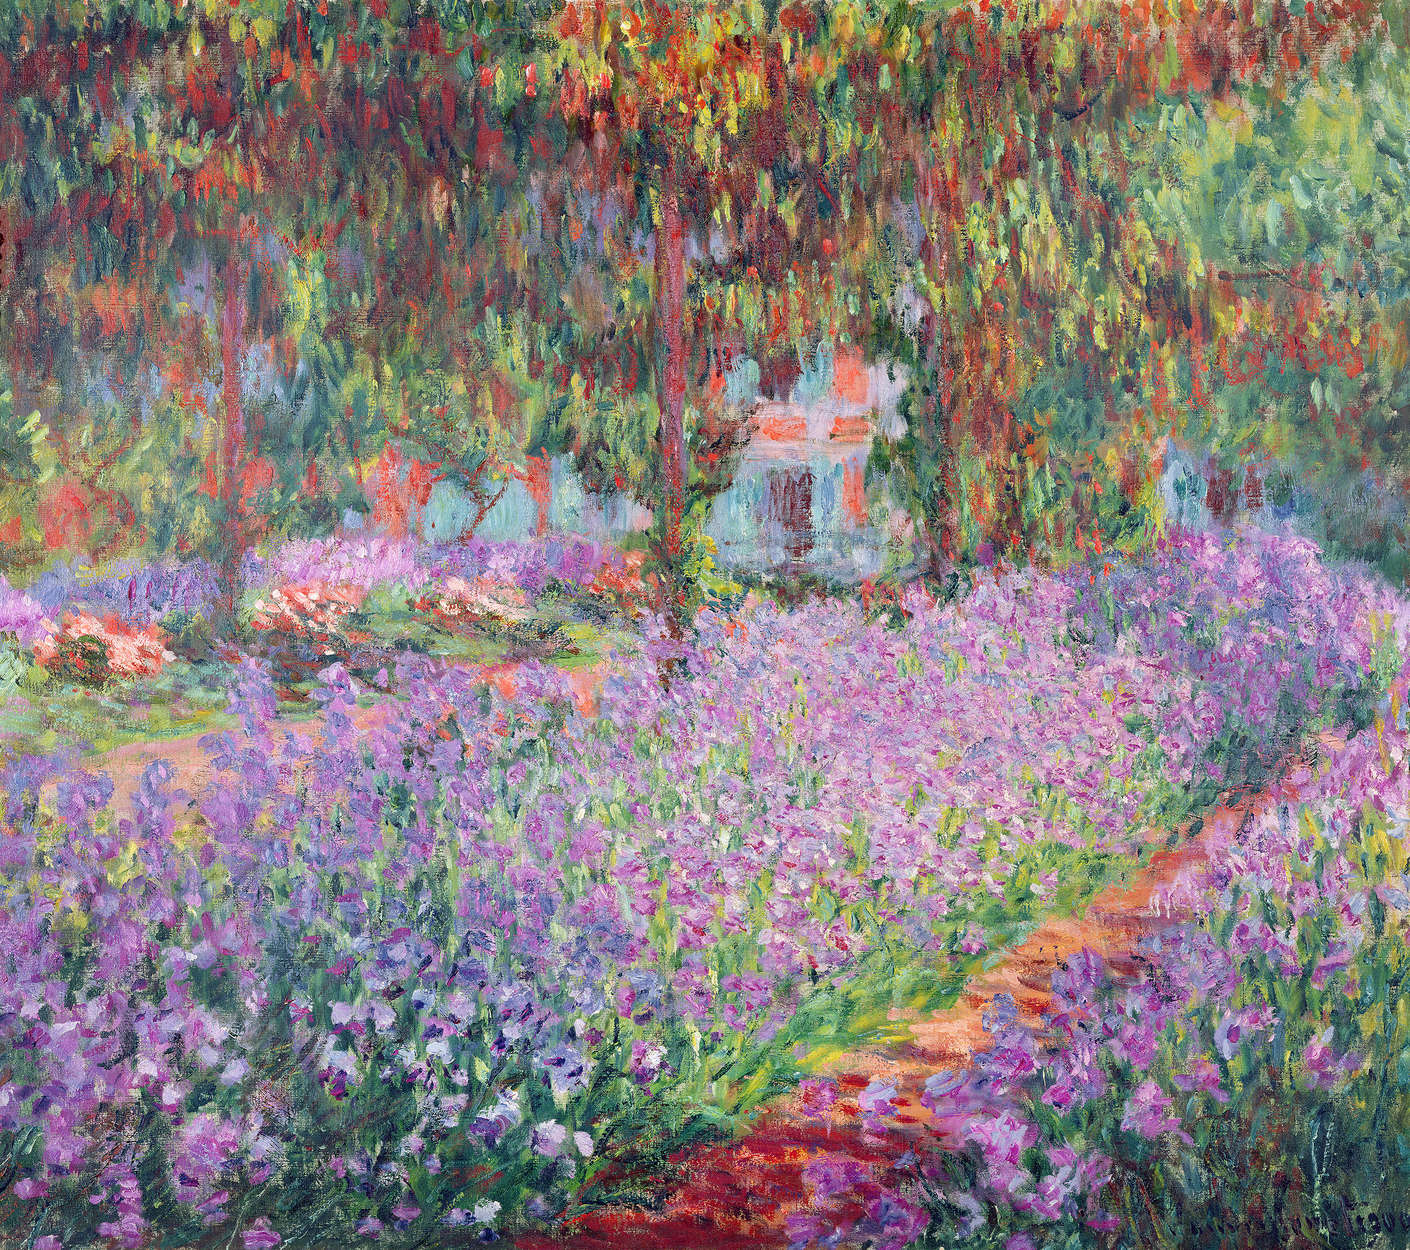             Fotomurali "Il giardino dell'artista a Giverny" di Claude Monet
        